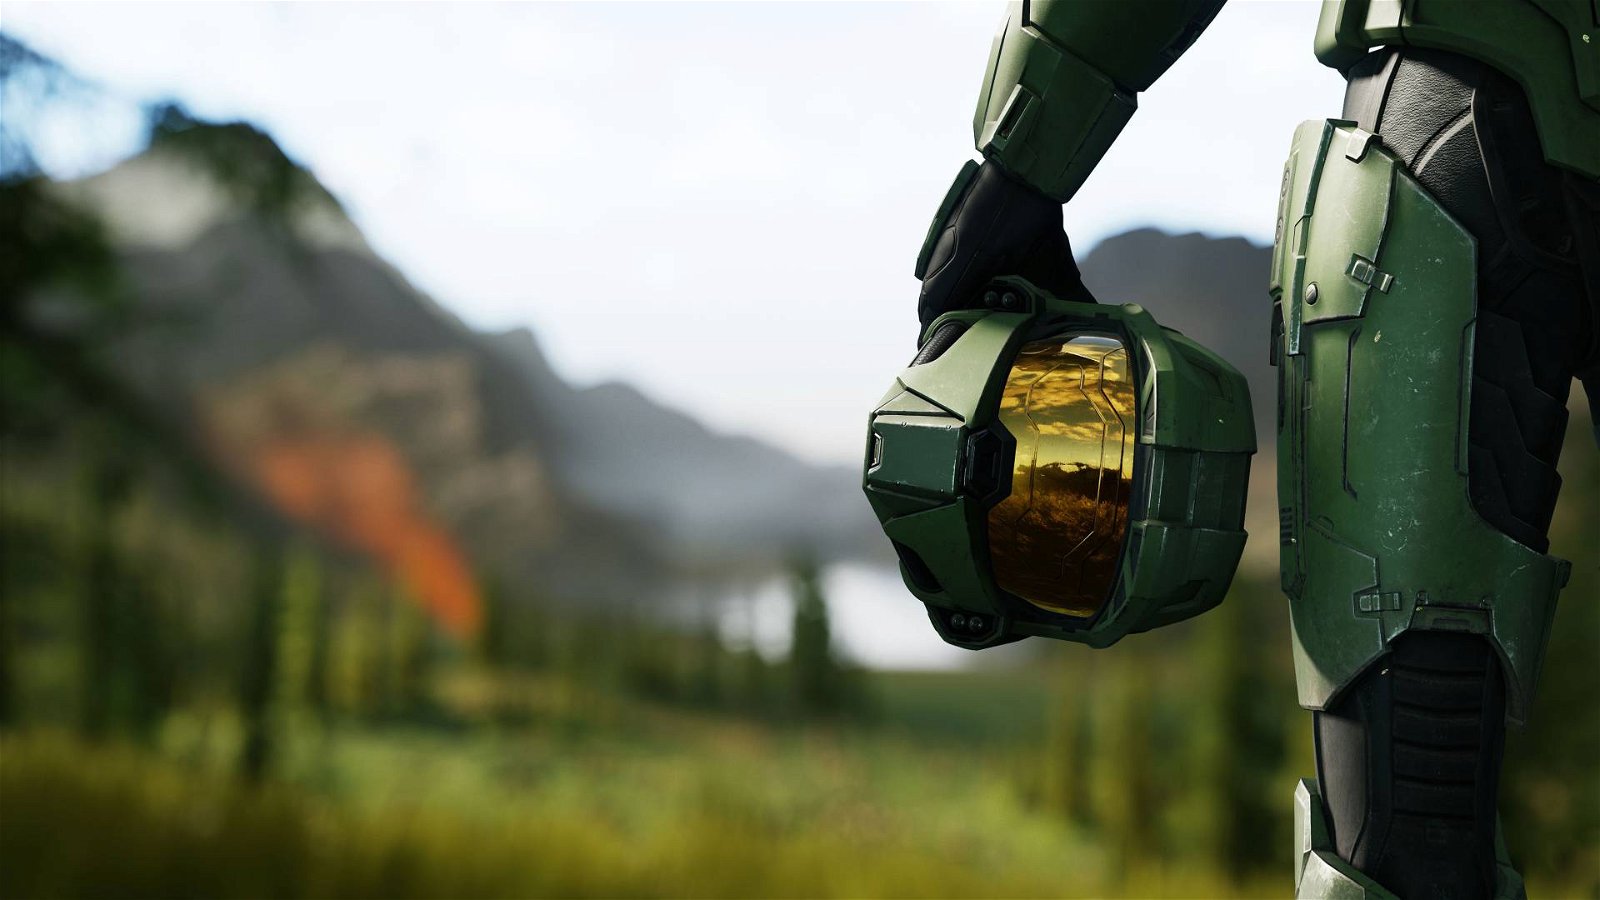 Immagine di Halo Infinite: 343 Industries commenta alcuni passi falsi del lancio